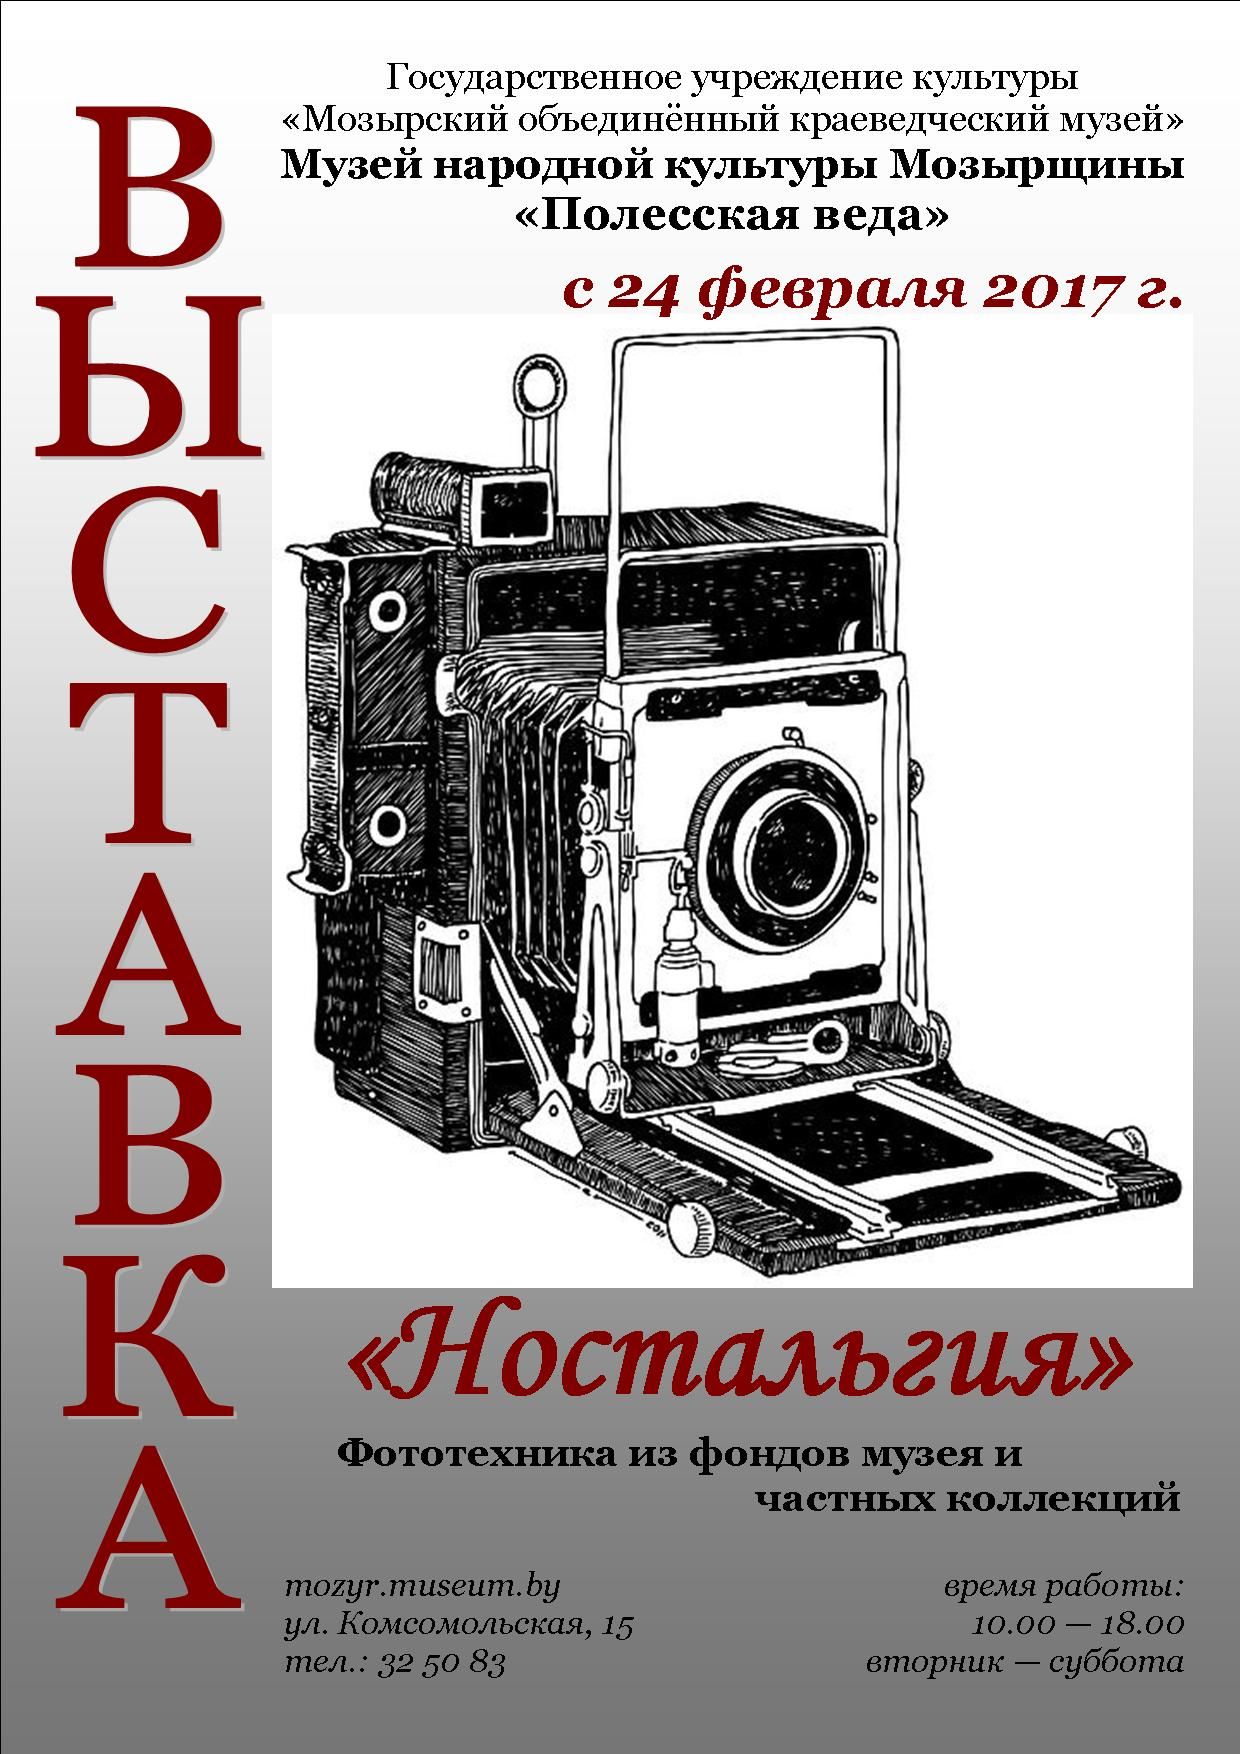 Выставка фототехники "Ностальгия"